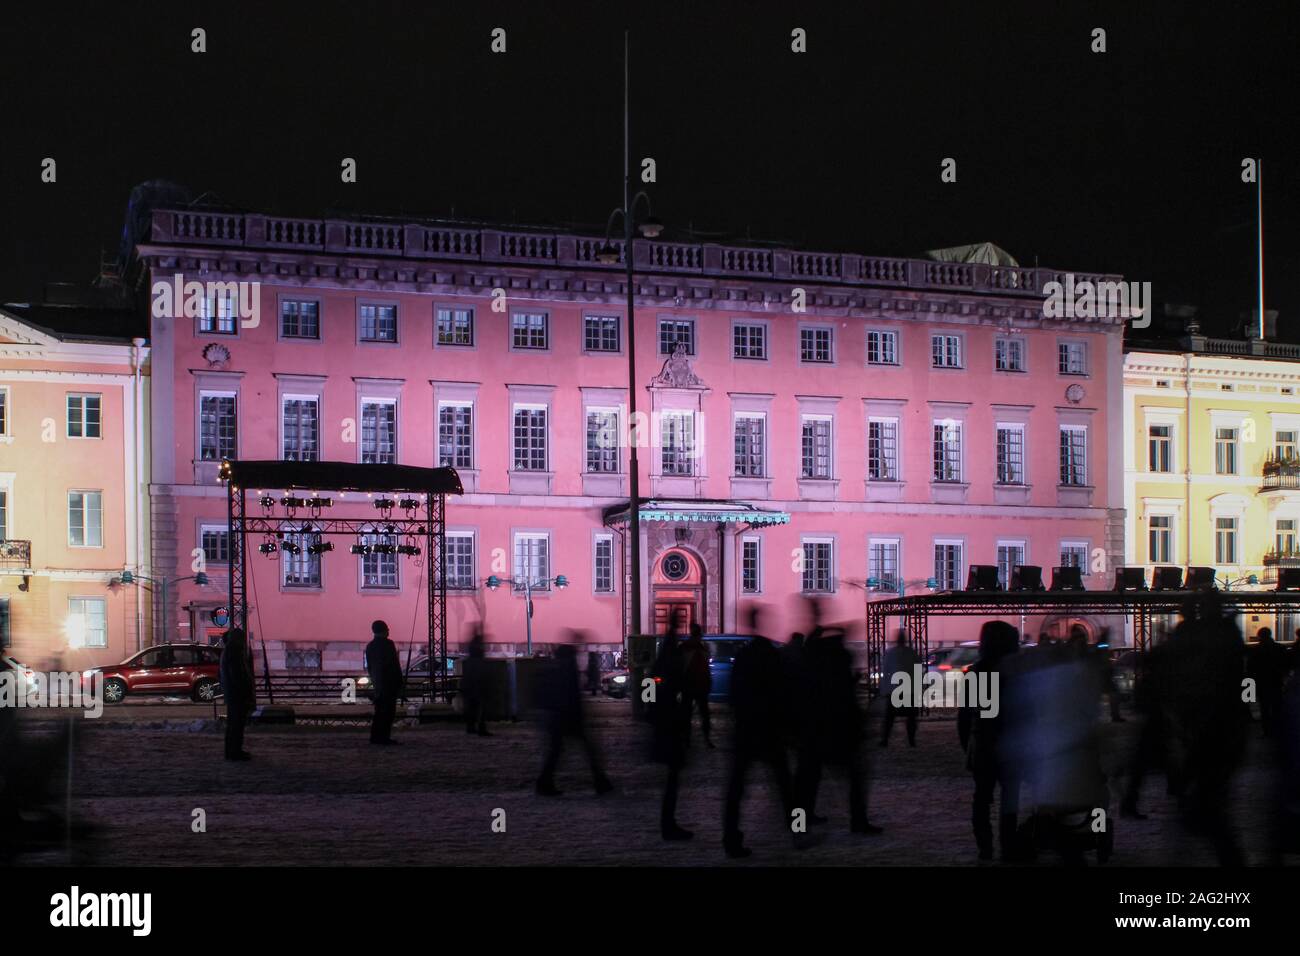 Ambassade de Suède allume pendant le festival d'art lumière Helsinki Lux à Helsinki, Finlande Banque D'Images